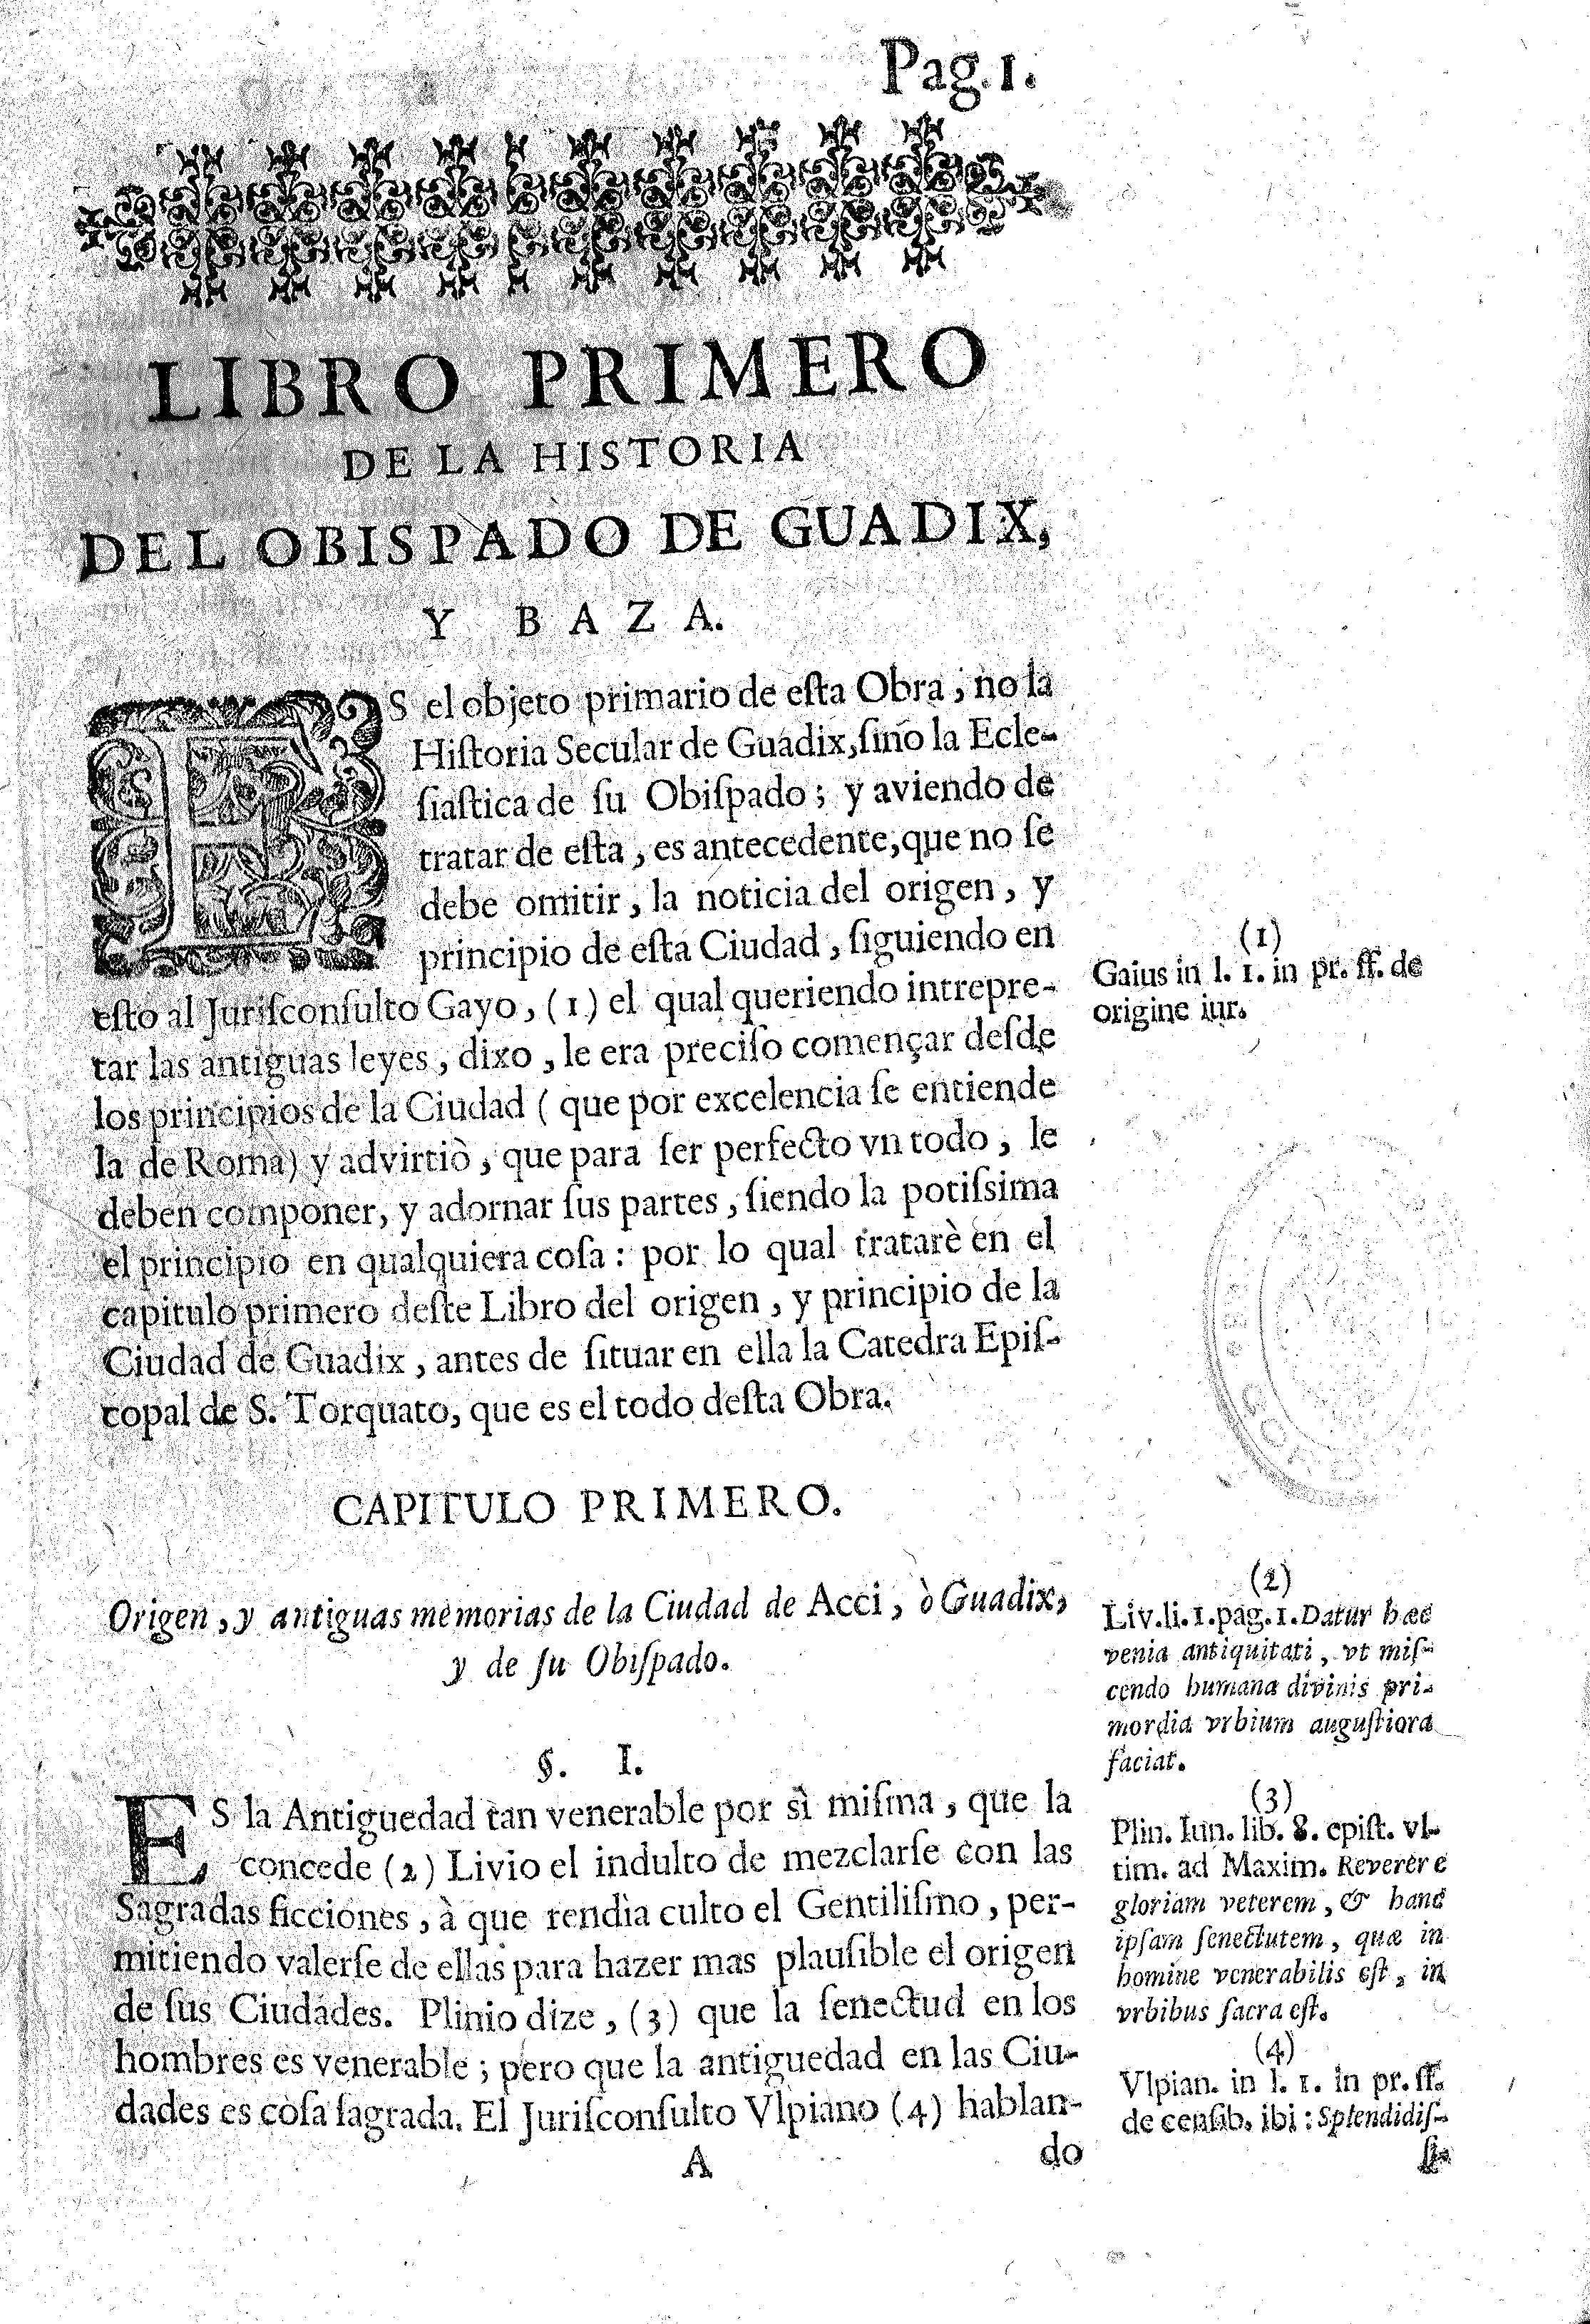 Libro primero de la historia del obispado de Guadix y Baza